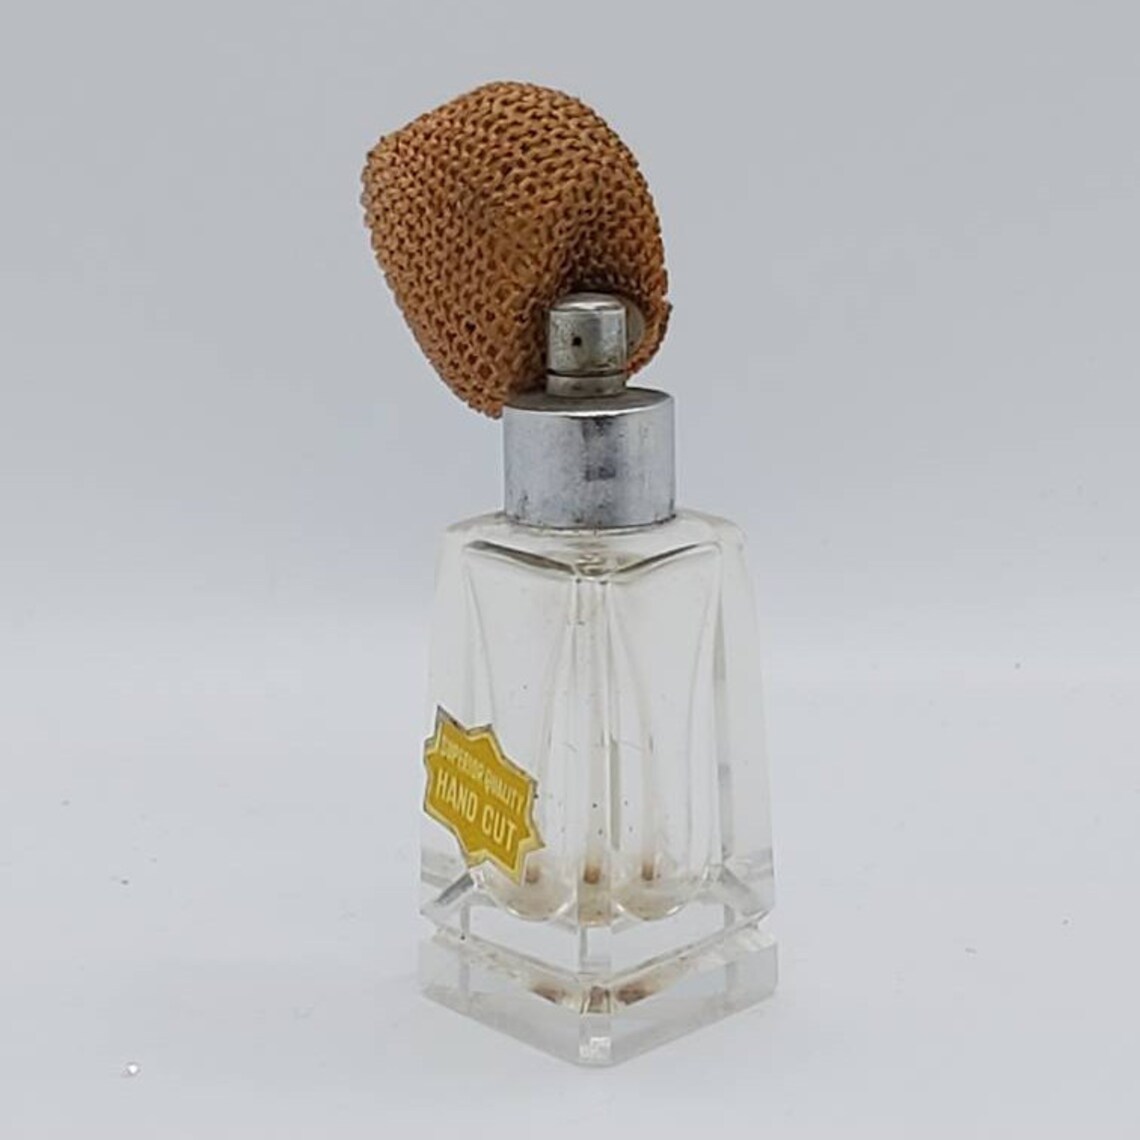 Hand Cut Glass Perfume bottle 1930's atomiser Fragrance | Etsy